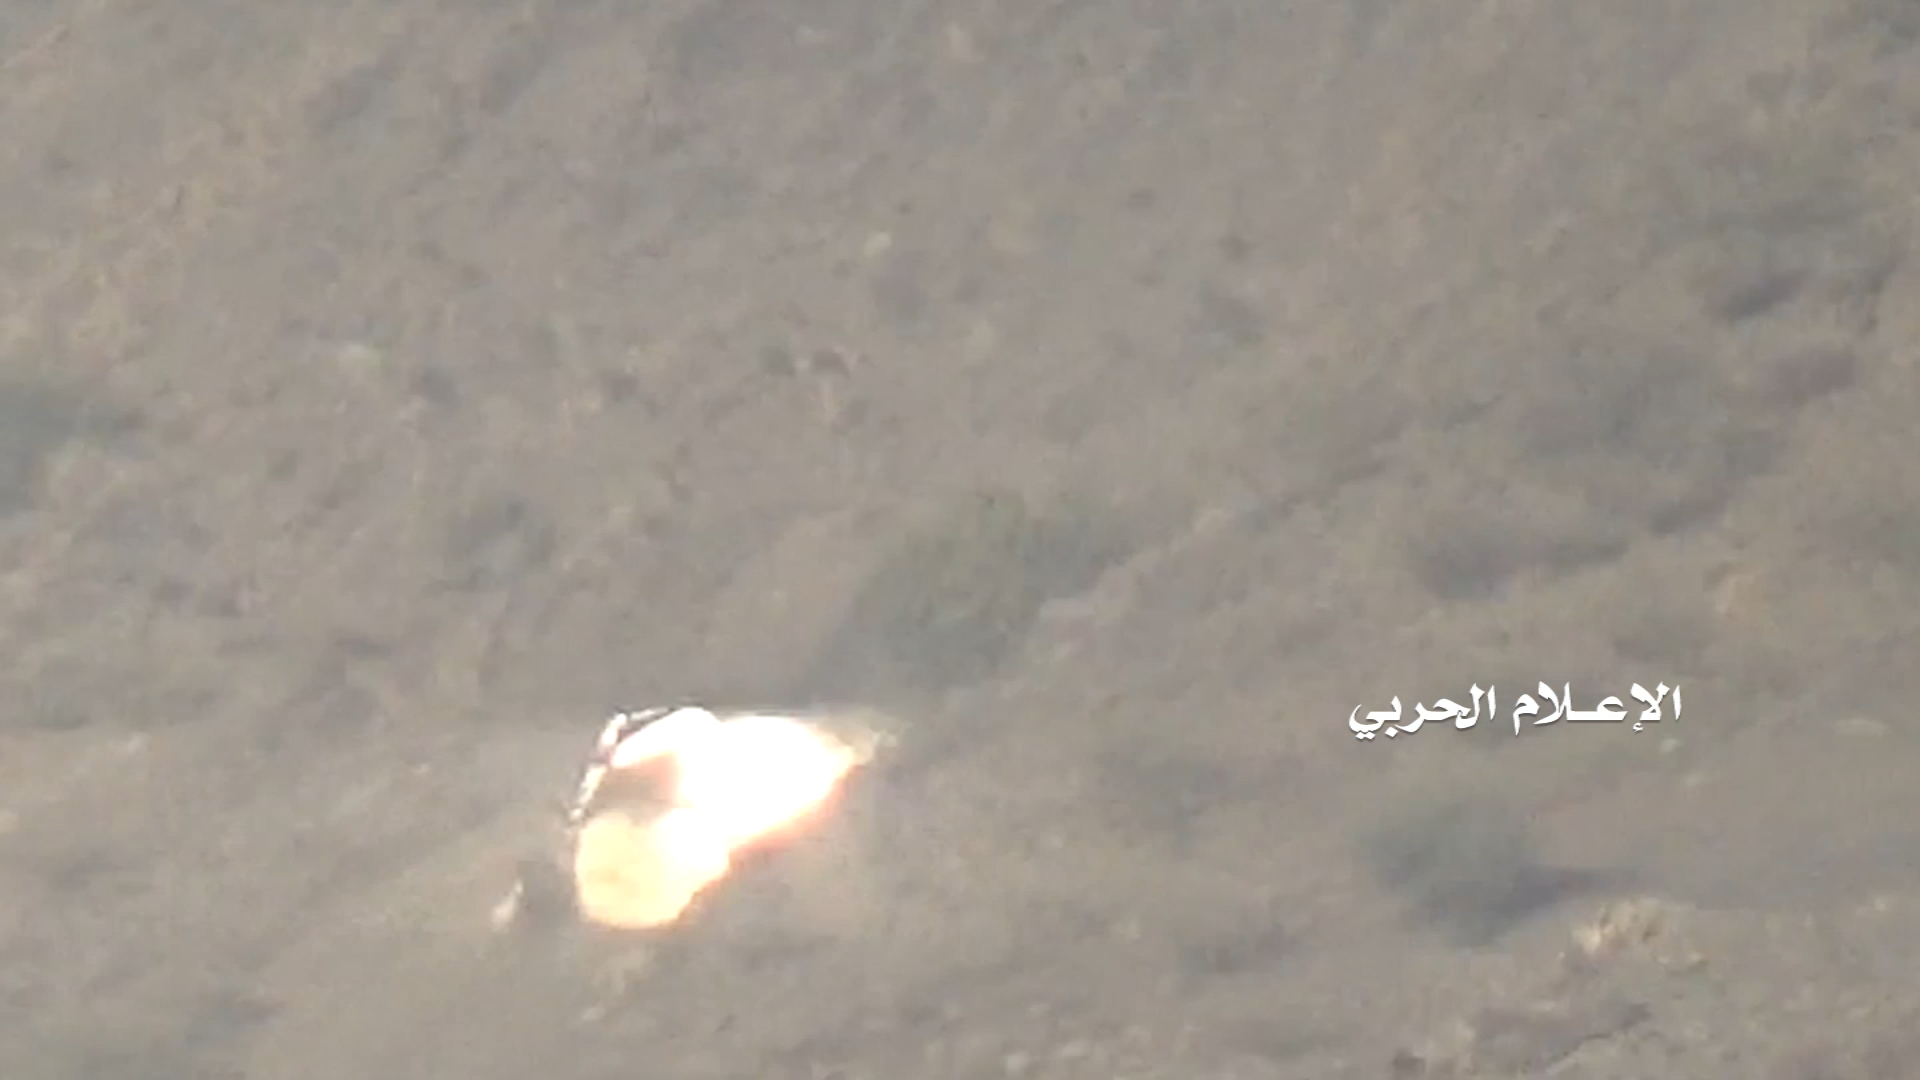 جيزان – استهداف جرافه بصاروخ موجه قبالة جبل قيس